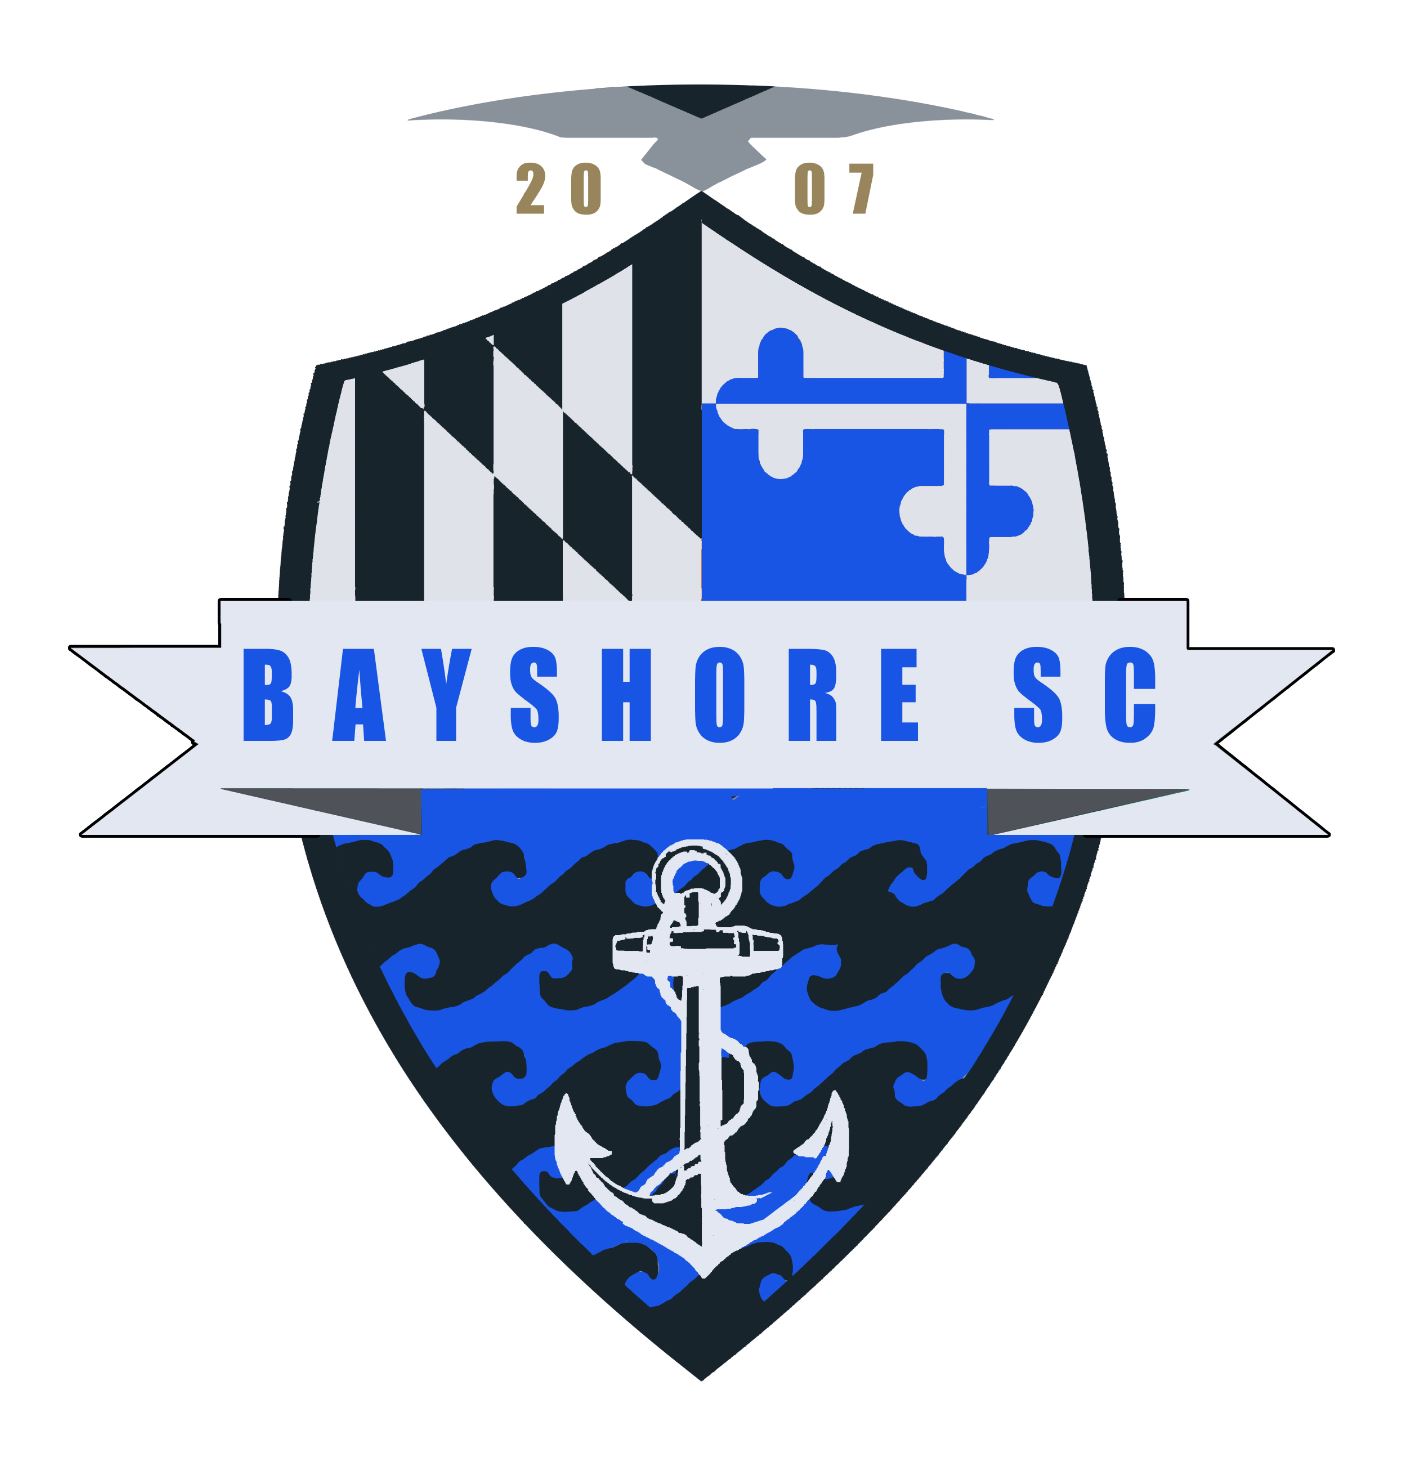 Bayshore SC team badge